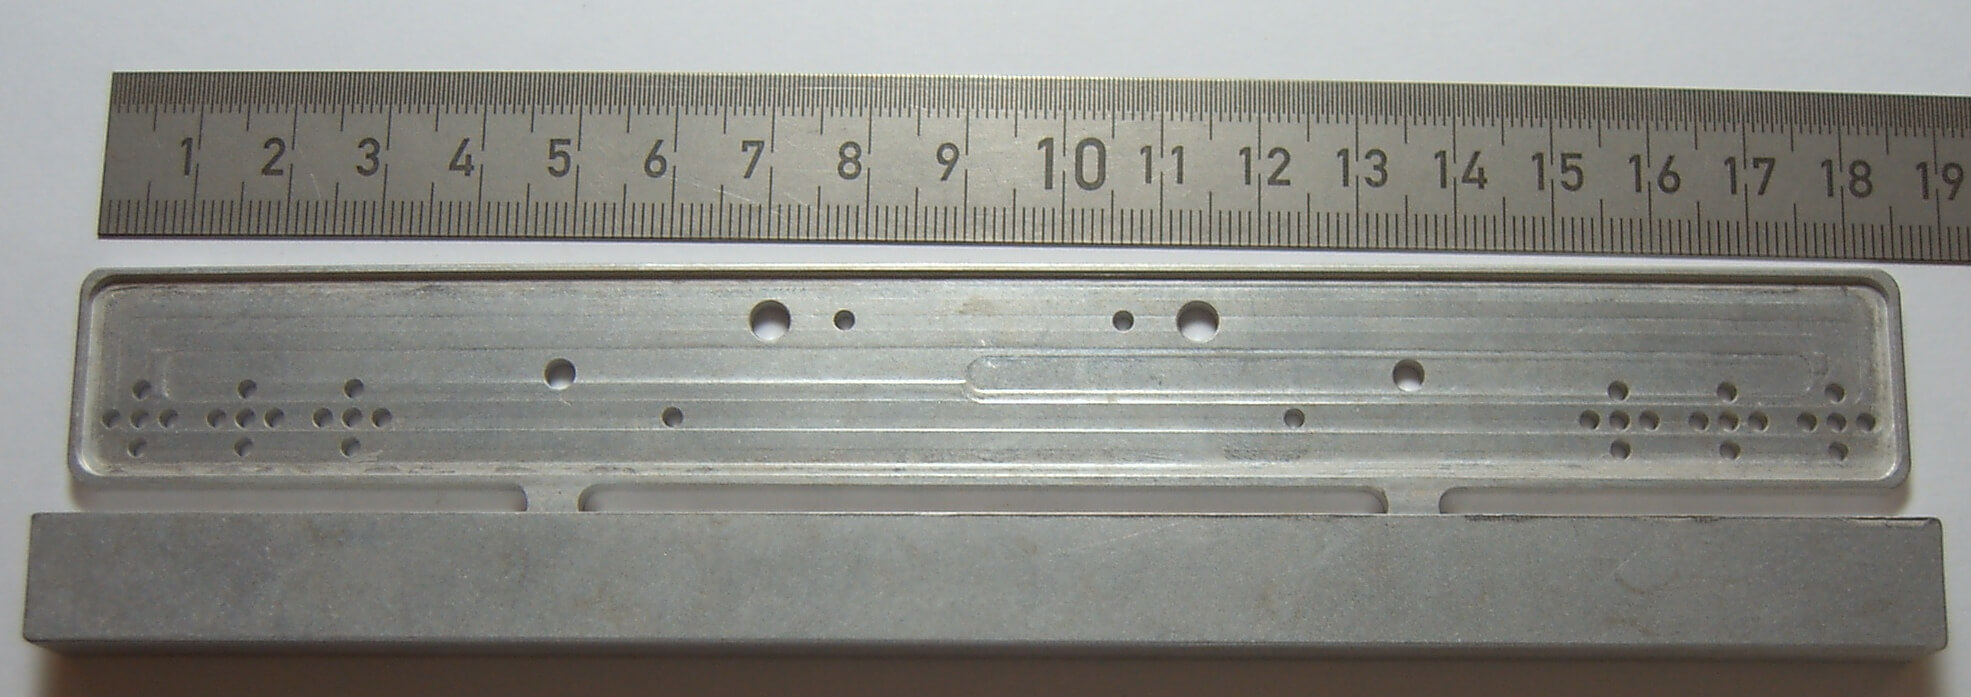 Heckstoßstange aus Stahl mit 8 oder 13 quadratischen Löchern 